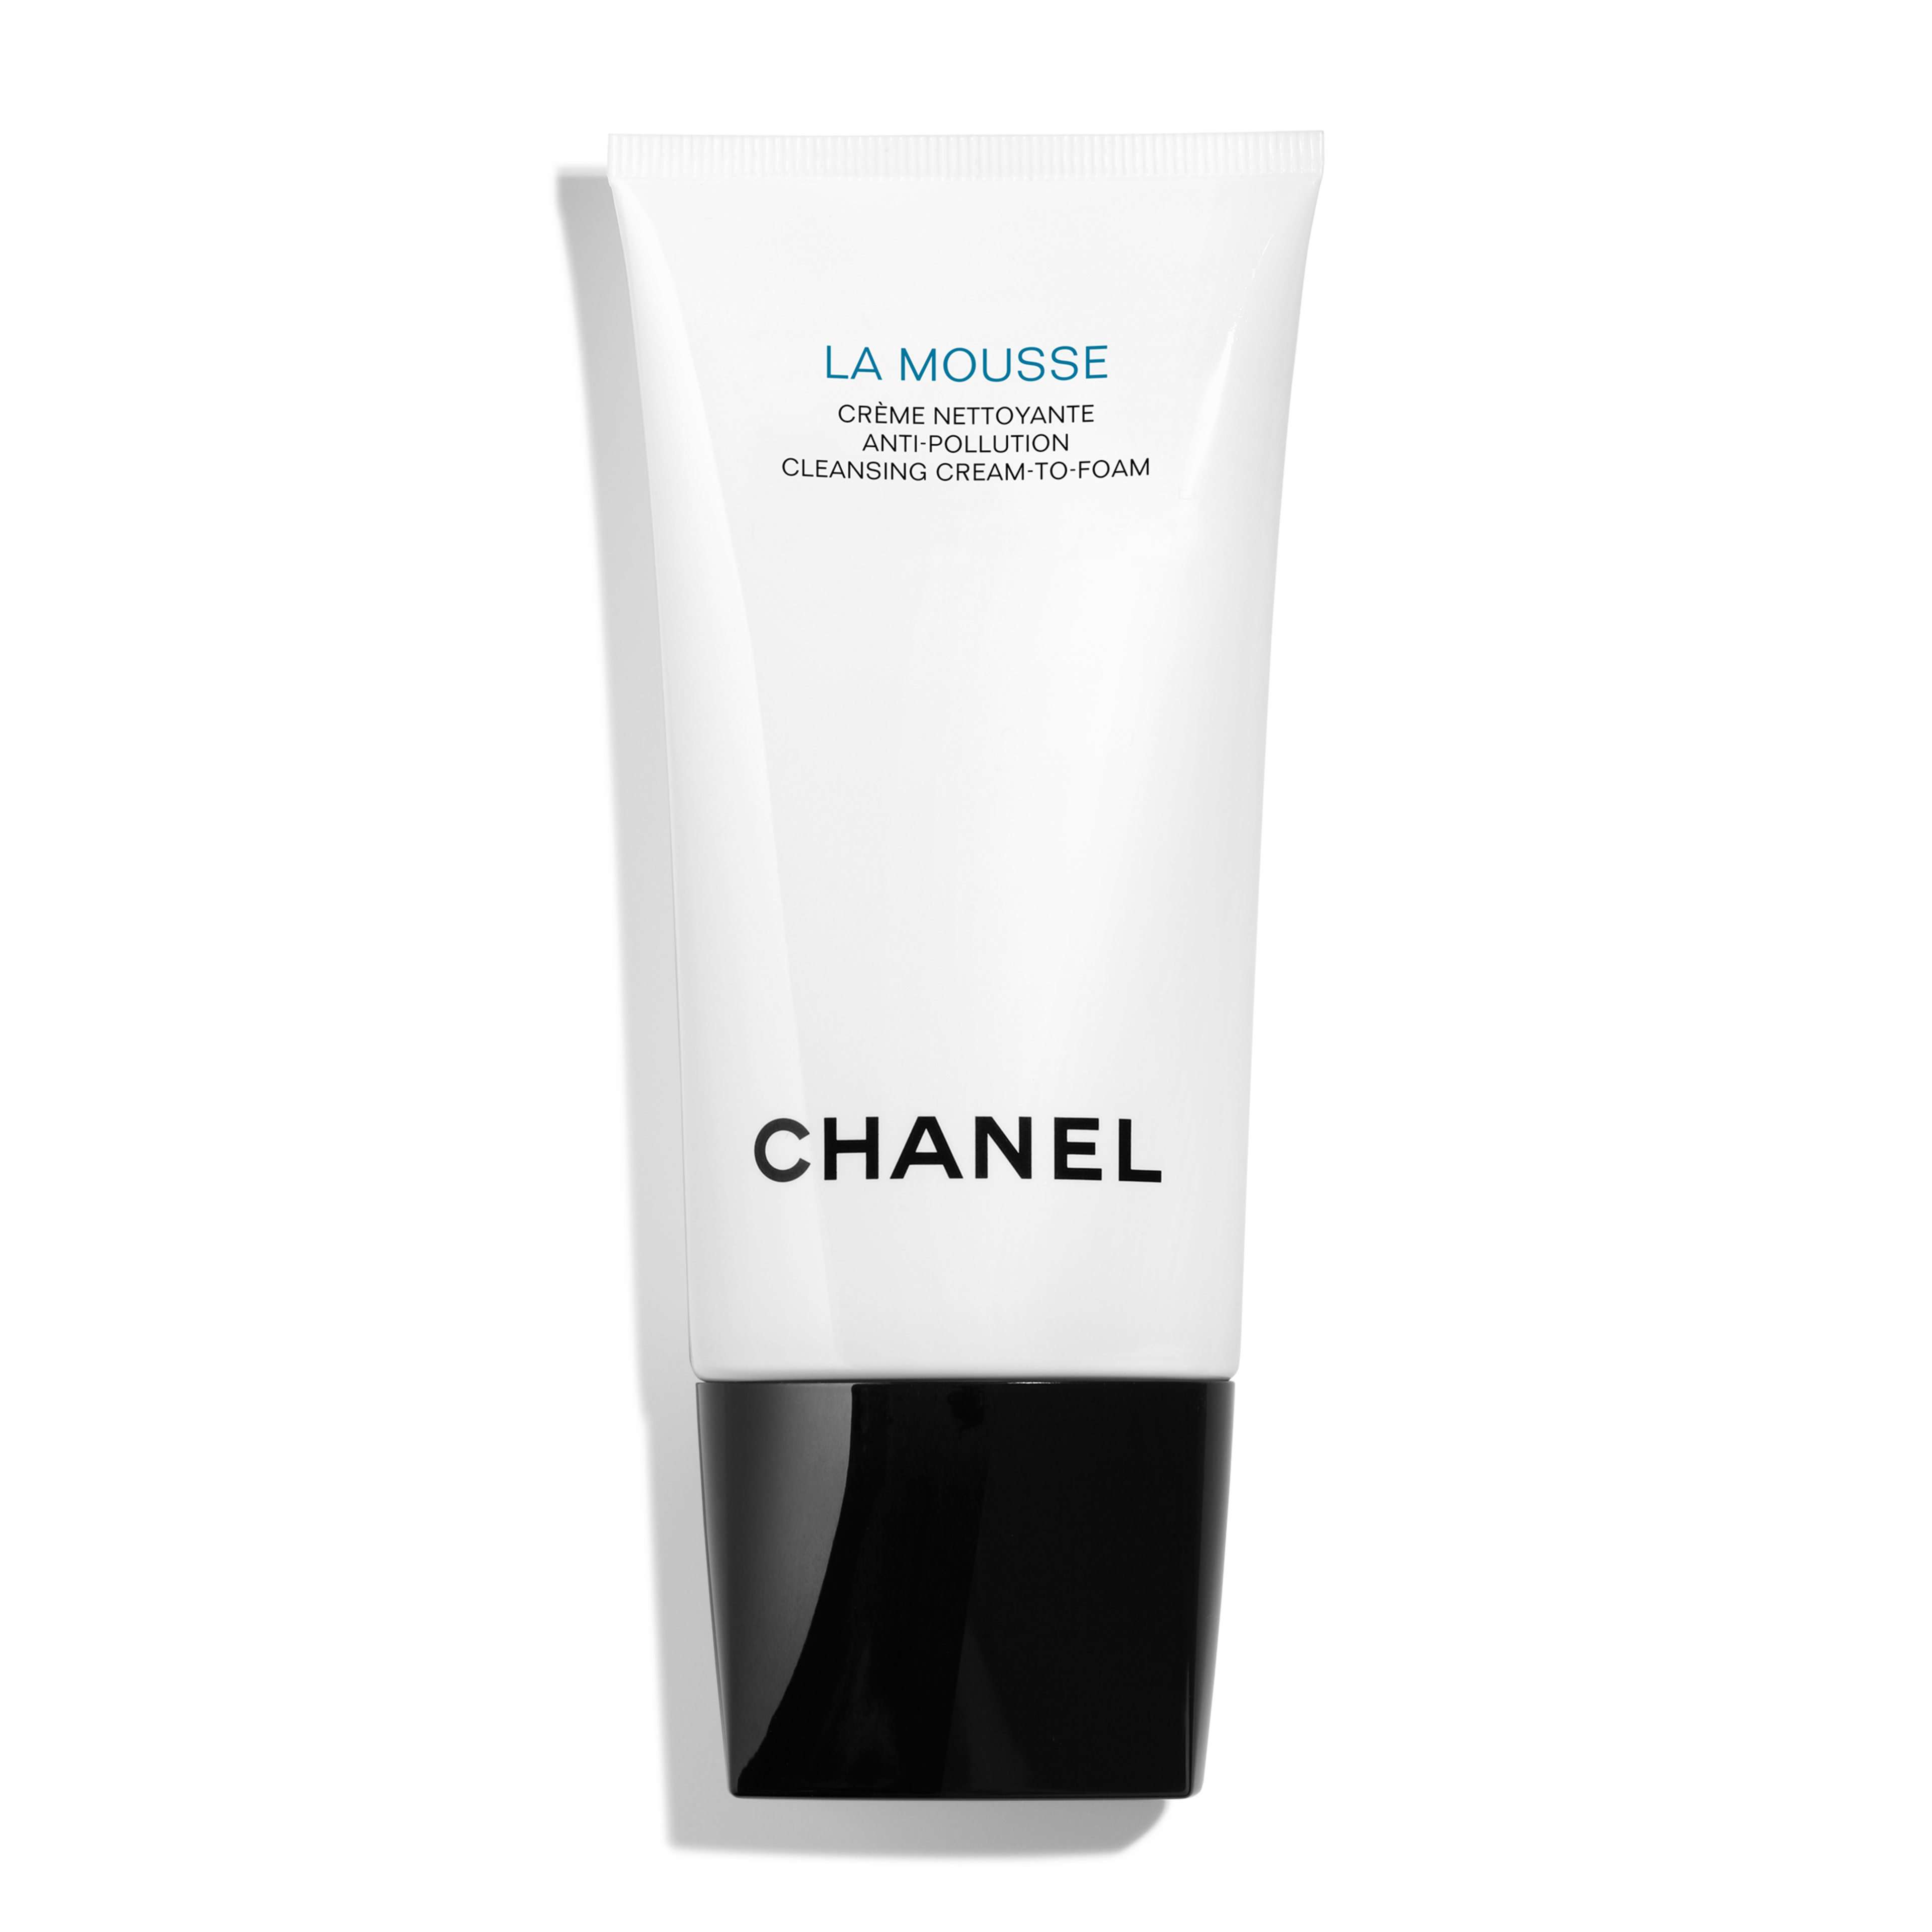 Chanel, La Mousse, Creme Nettoyante Anti-pollution [Cleansing  Cream-to-foam] (Oczyszczający krem anti-pollution) - cena, opinie, recenzja